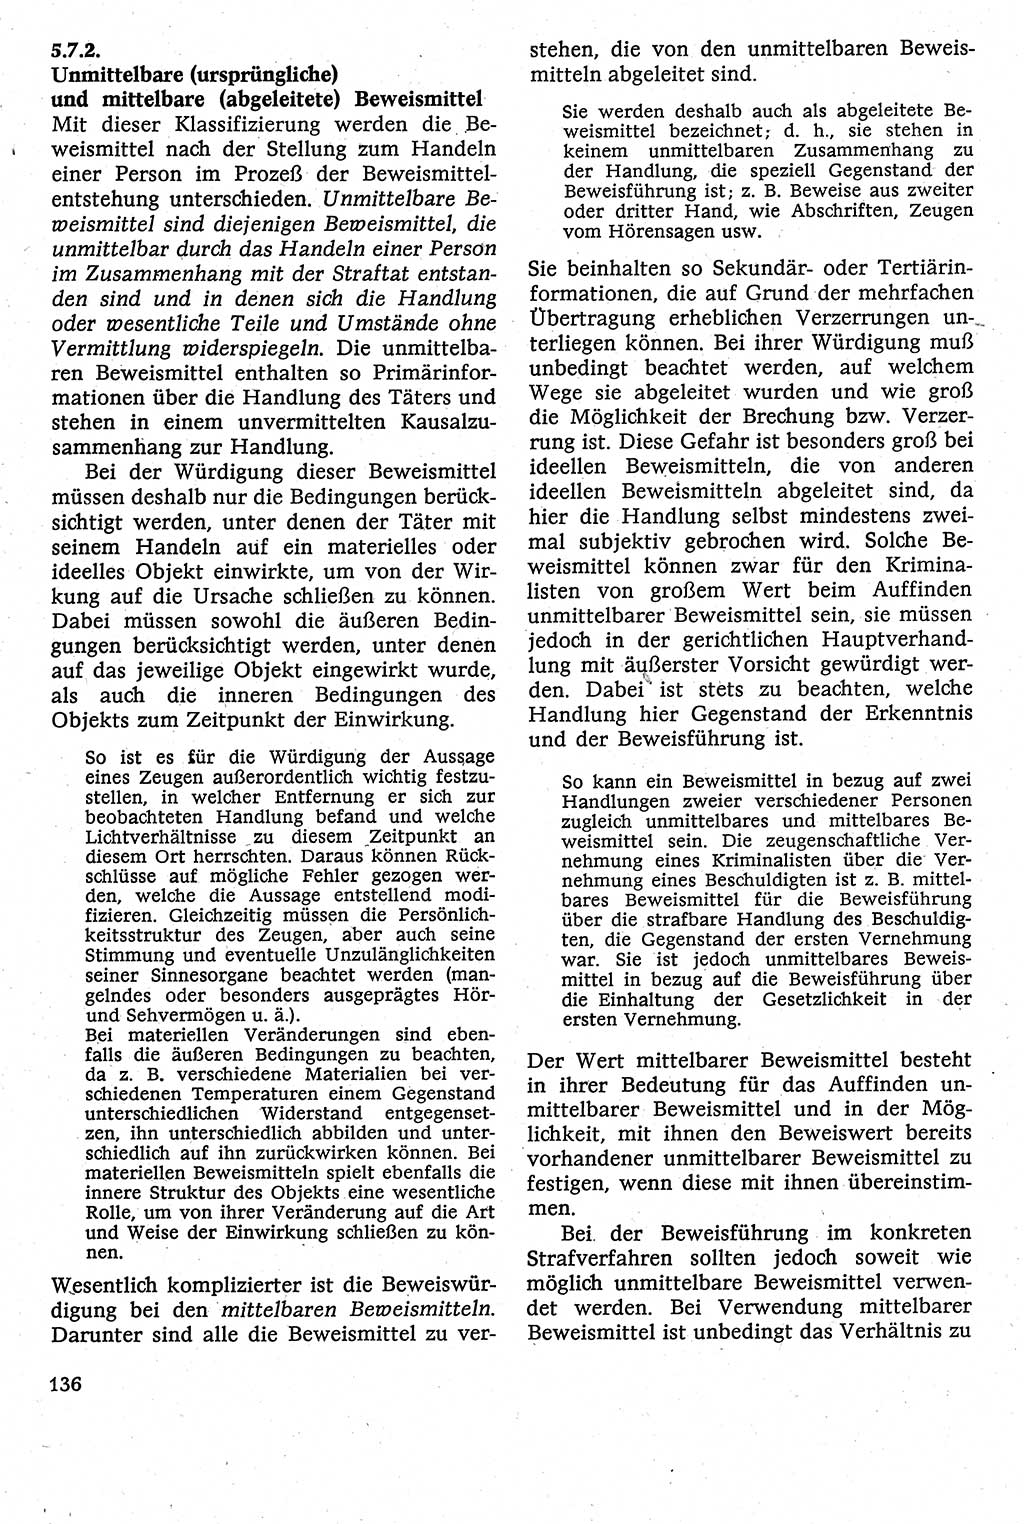 Strafverfahrensrecht [Deutsche Demokratische Republik (DDR)], Lehrbuch 1982, Seite 136 (Strafverf.-R. DDR Lb. 1982, S. 136)